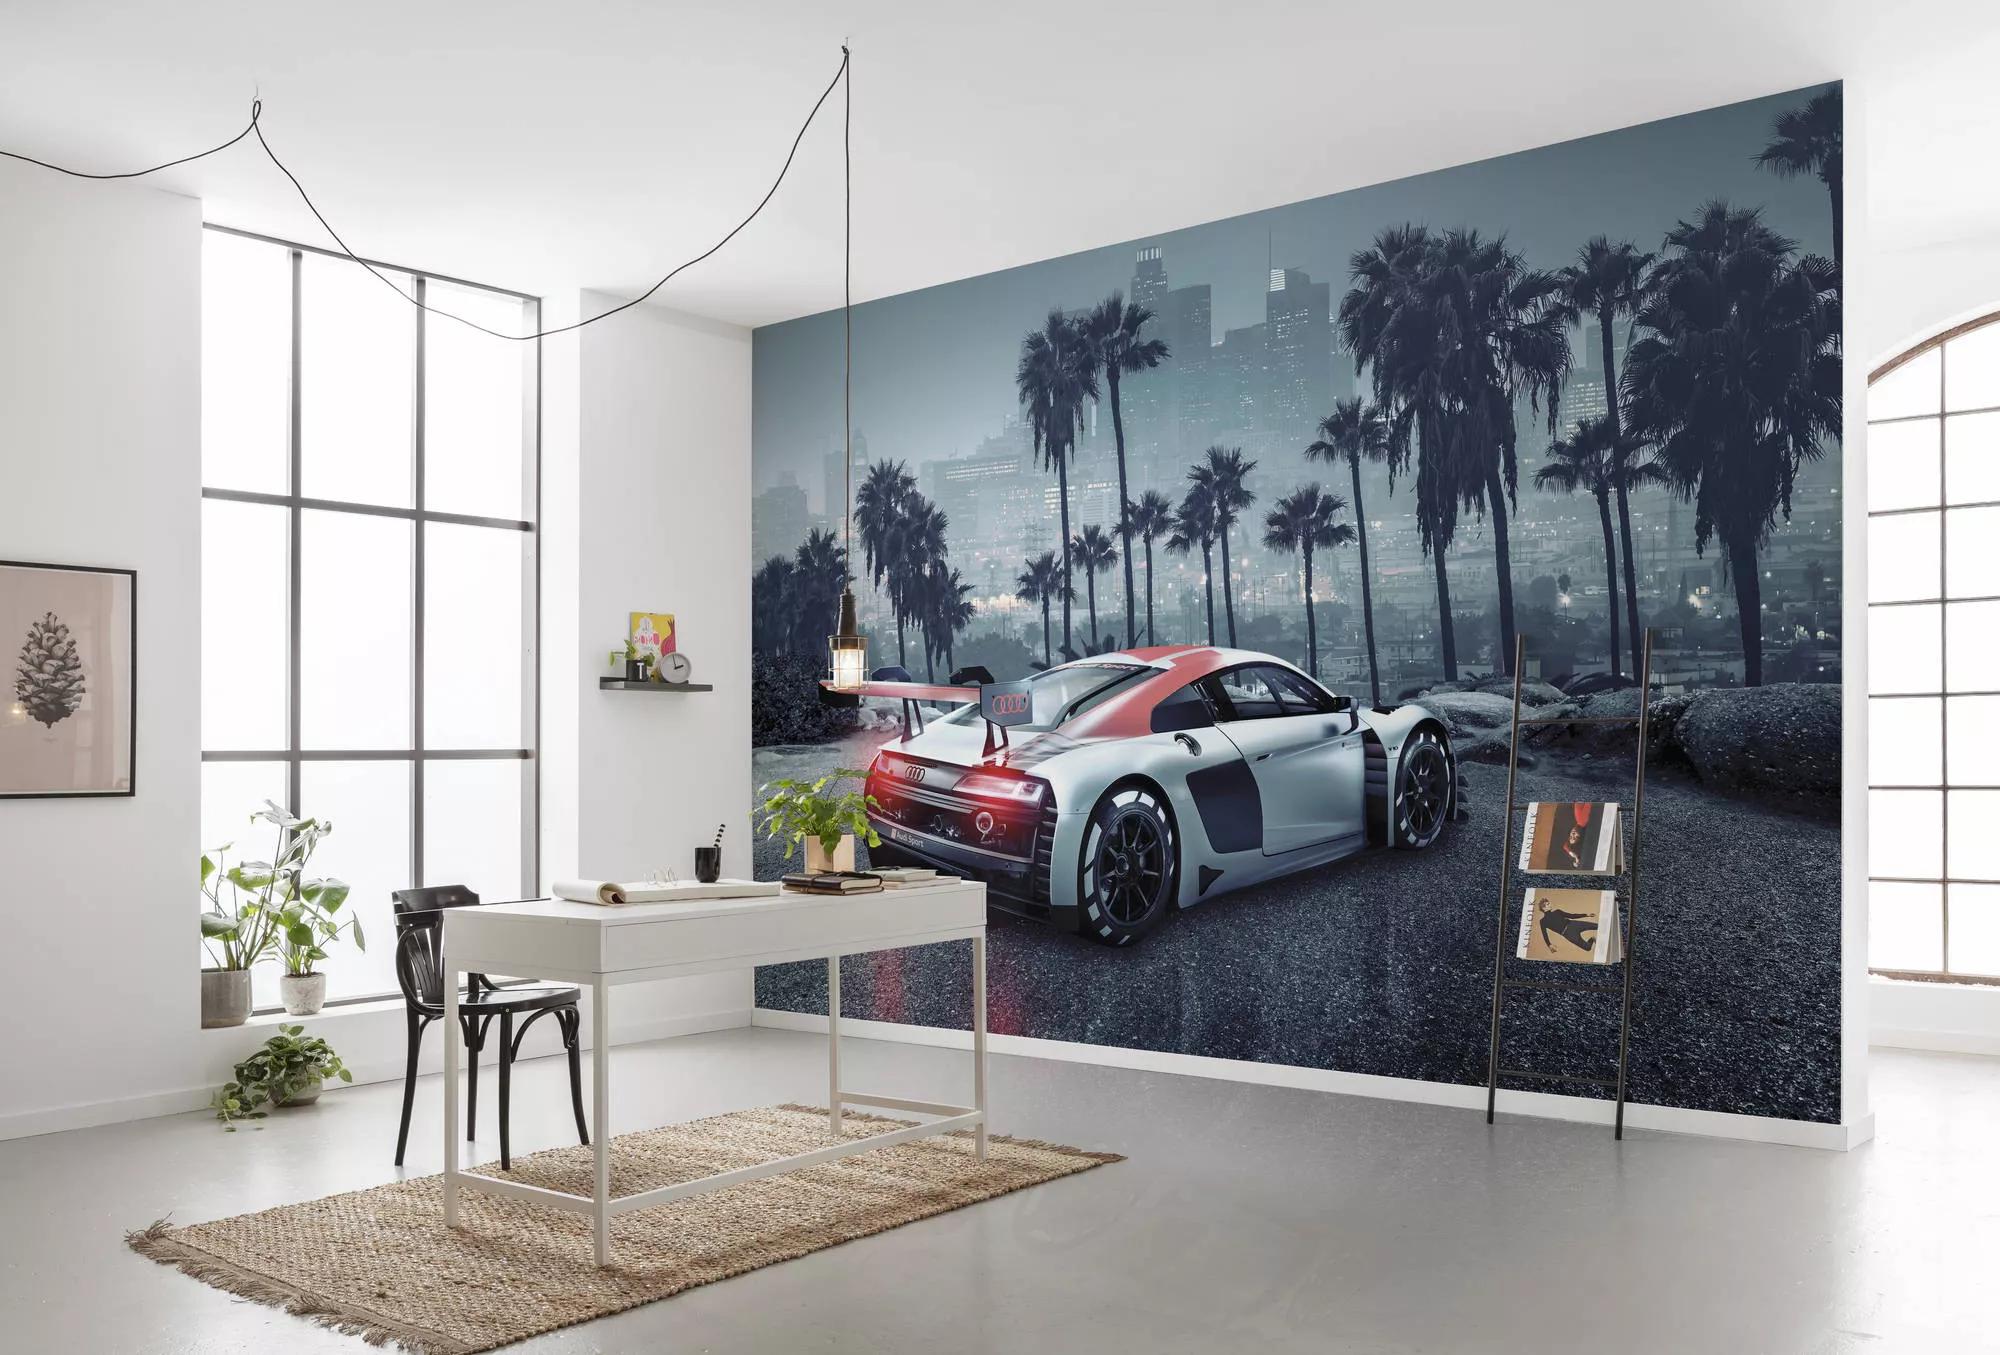 Fali poszter Audi R8 Los Angeles látképével